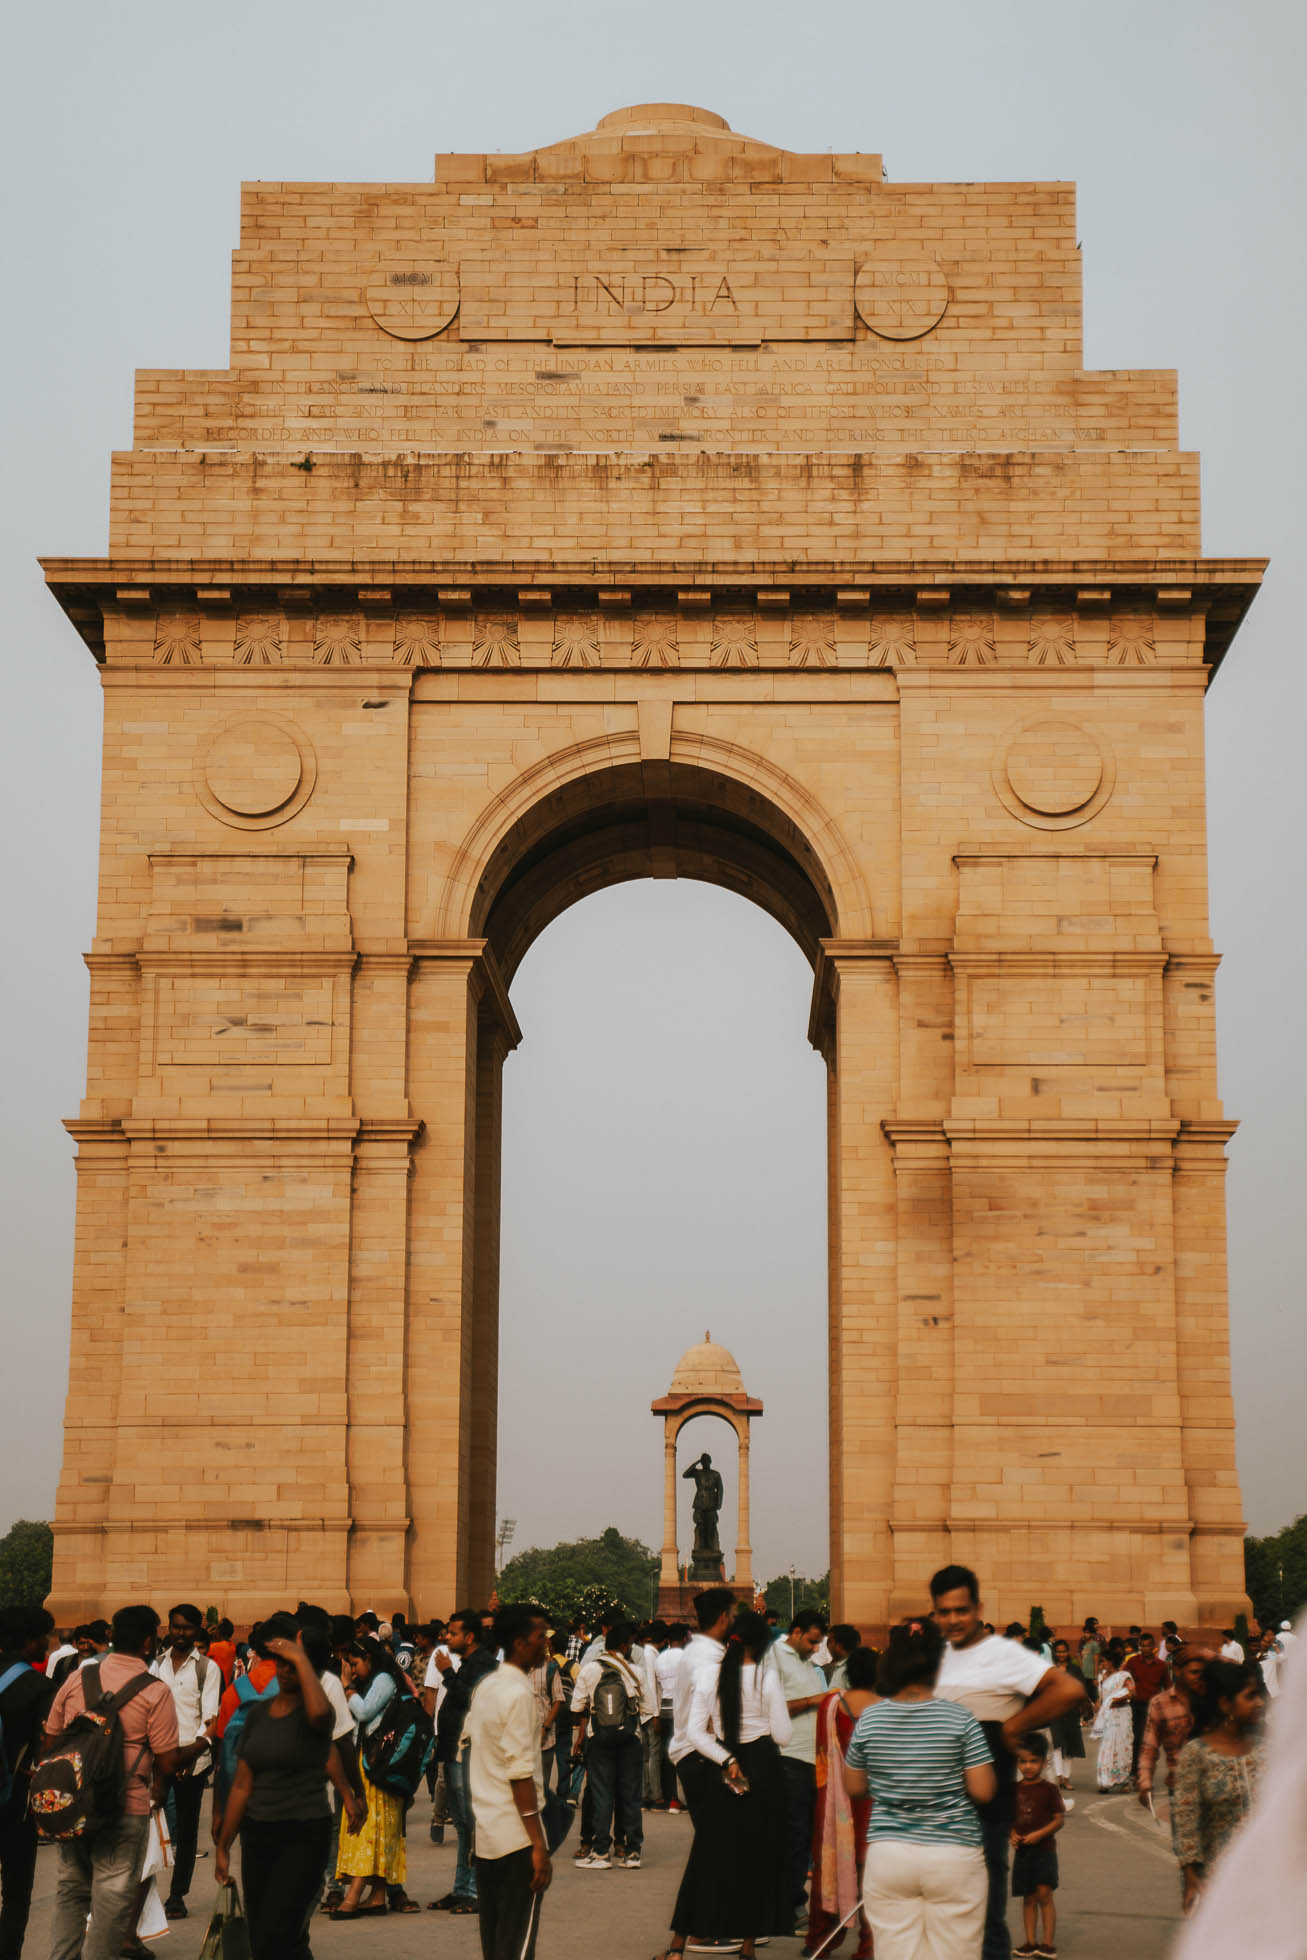 Puerta de la India, un monumento histórico que ver en Delhi